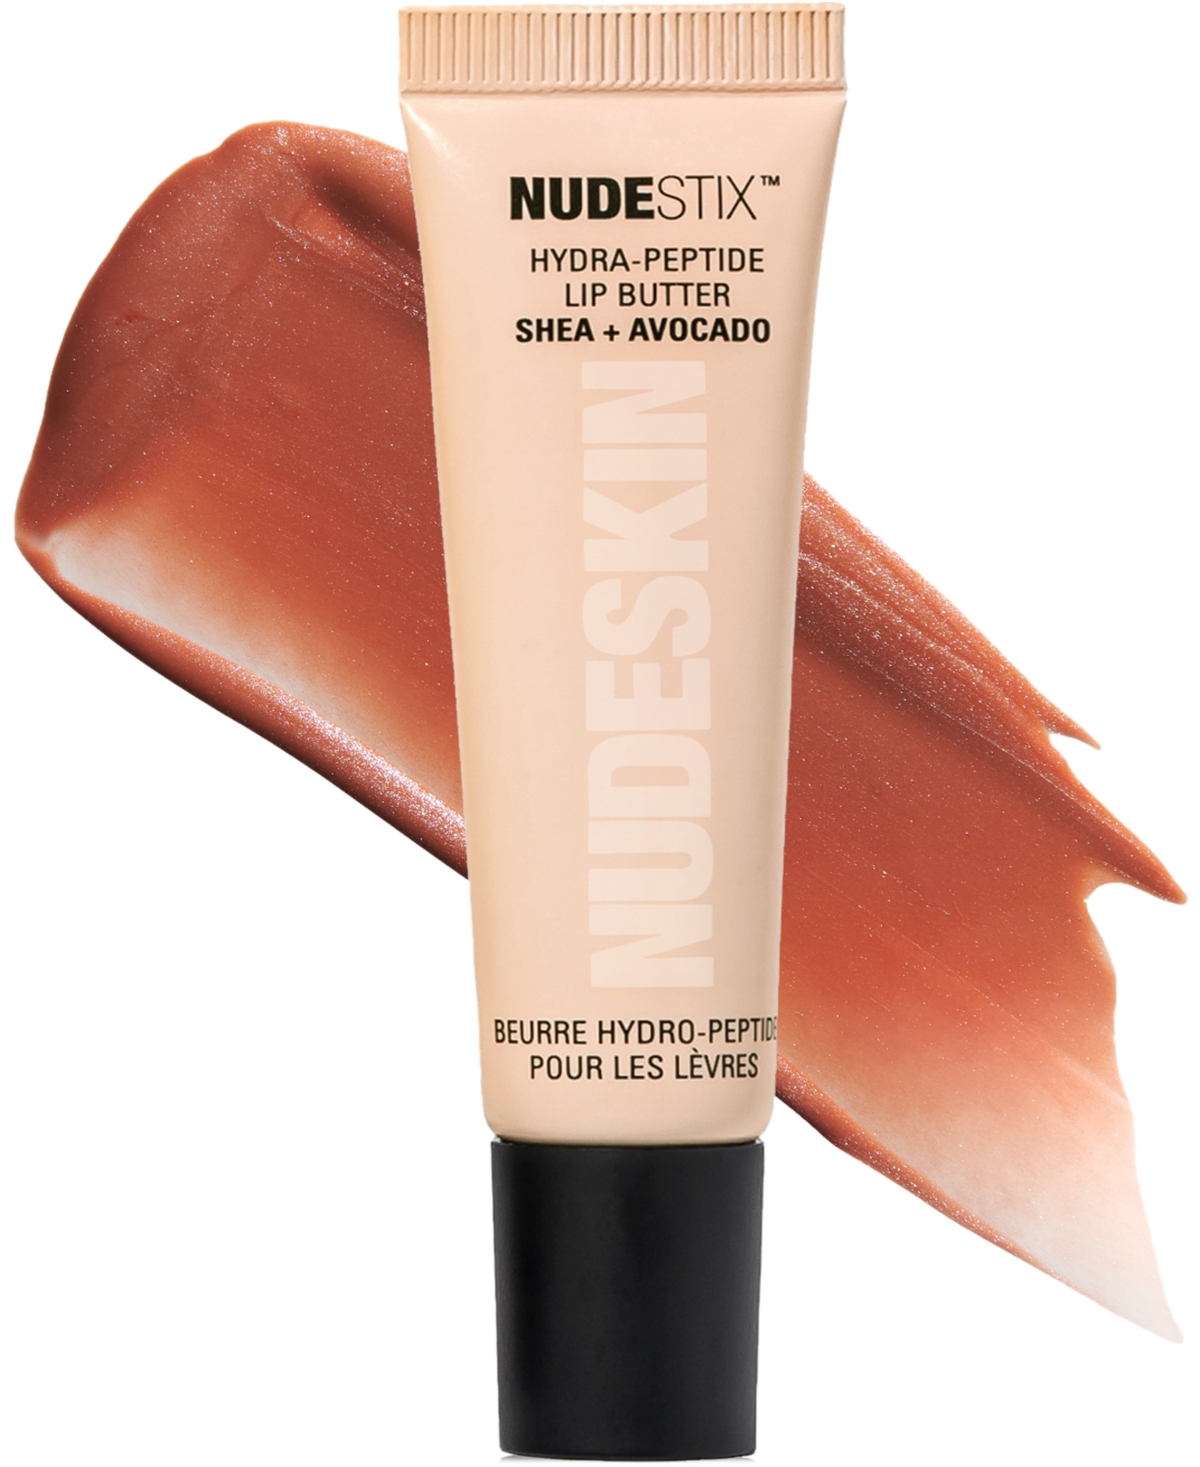 Nudestix Nudeskin Hydra-peptide Lip Butter In Dolce Nude